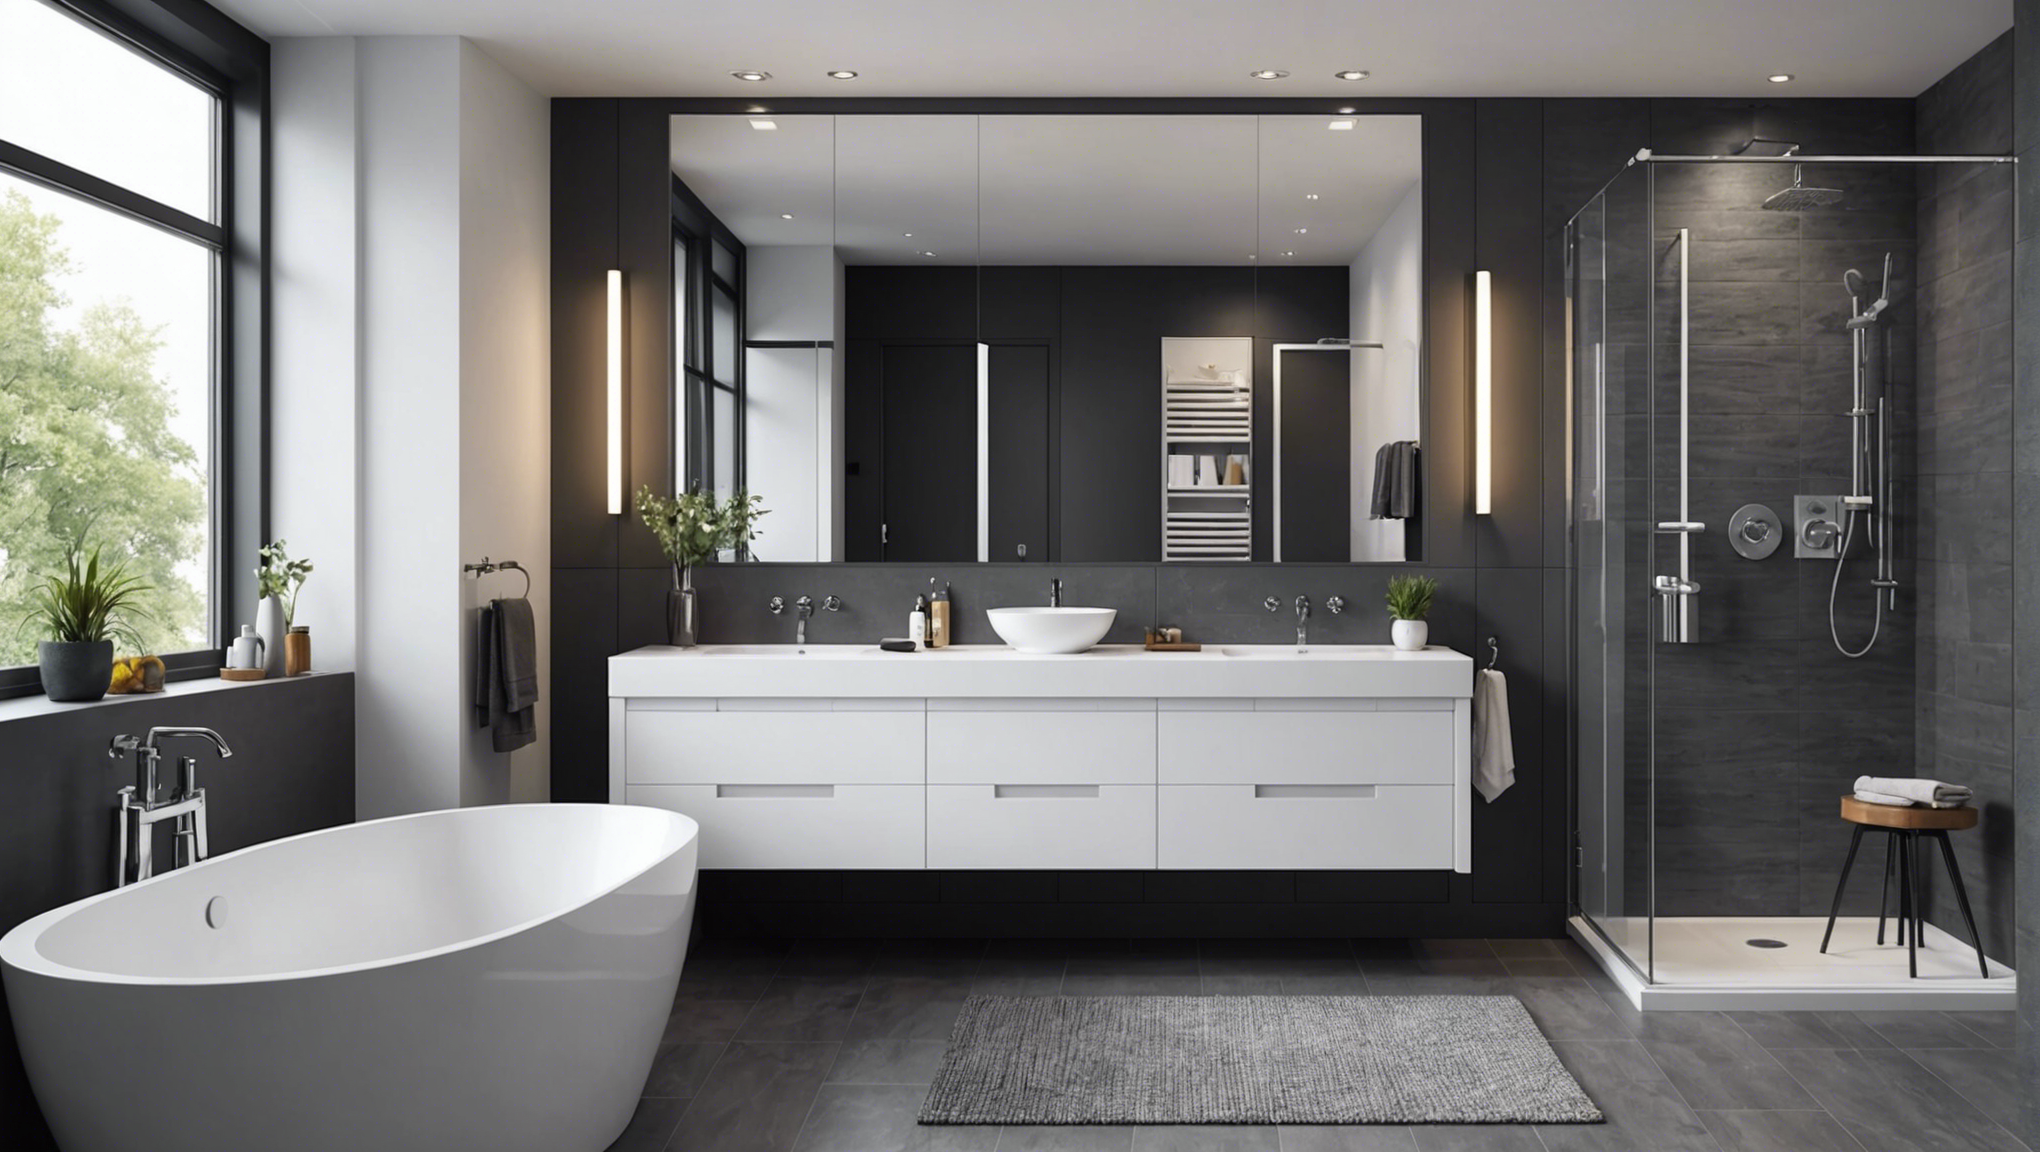 découvrez comment moderniser et sublimer votre salle de bain avec nos conseils pour la rendre à la fois moderne et élégante.